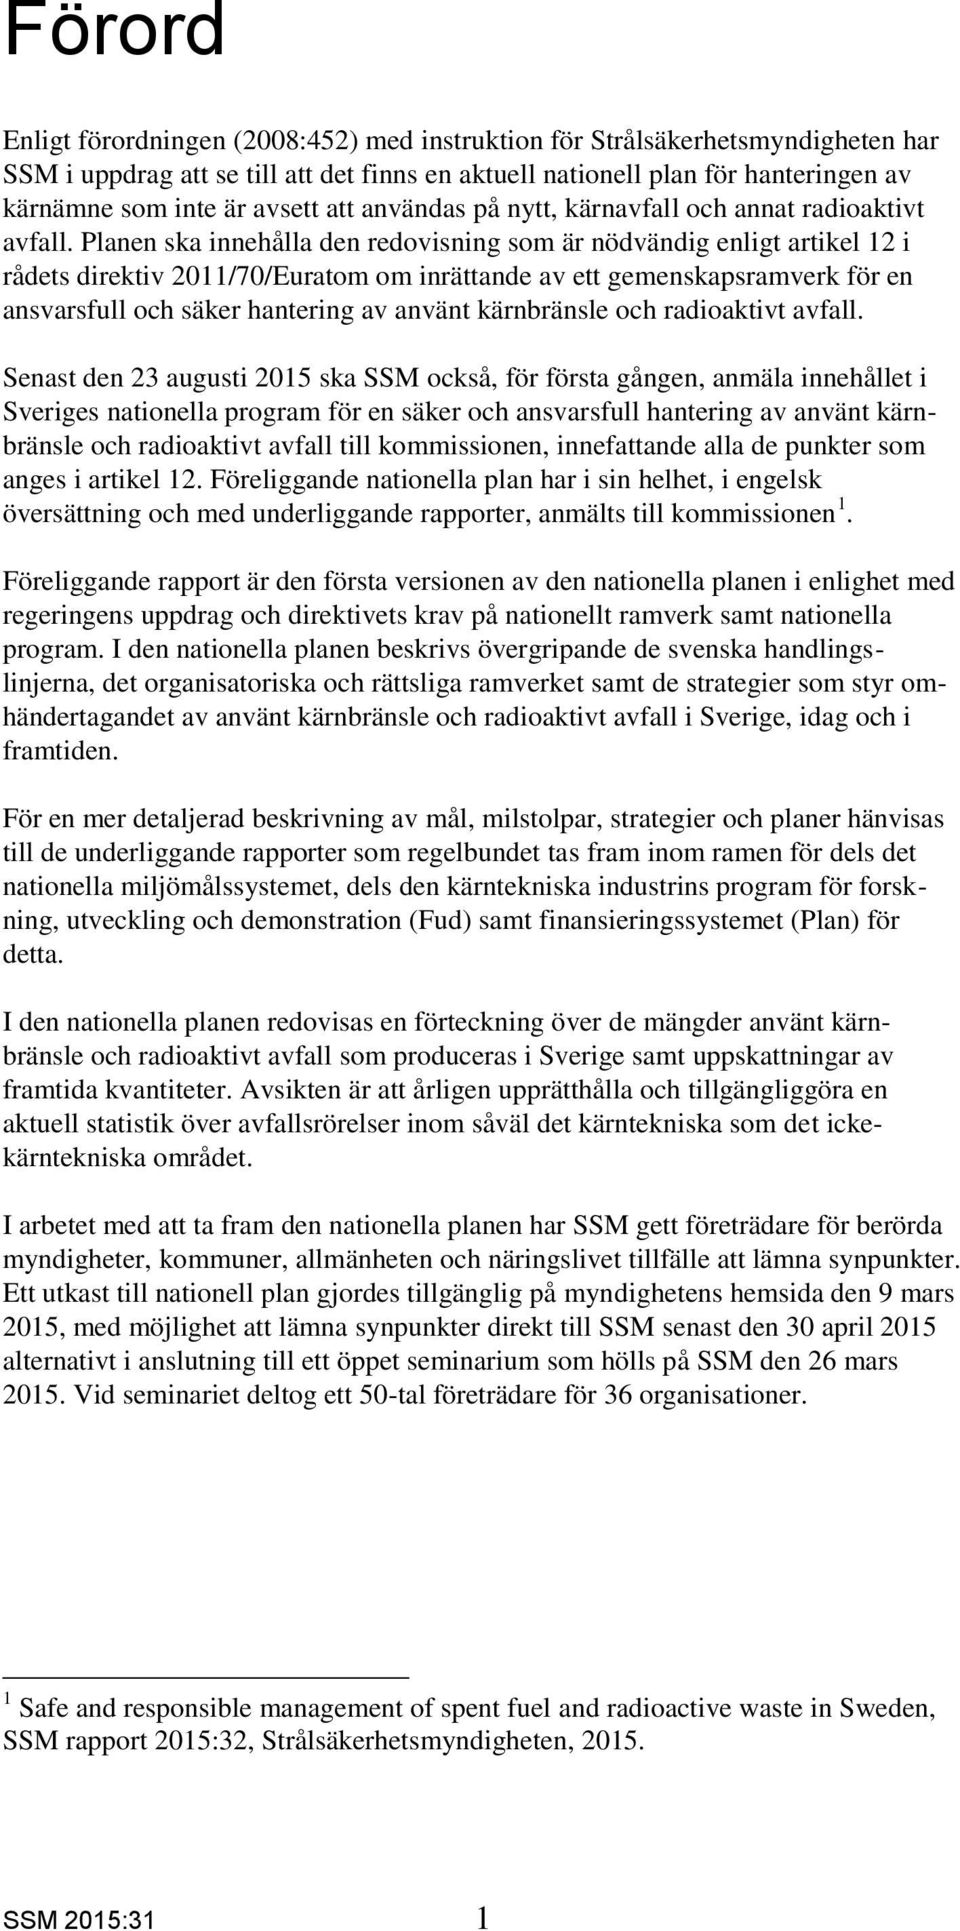 2015:31. Ansvarsfull och säker hantering av använt kärnbränsle och radioaktivt  avfall i Sverige. Nationell plan - PDF Free Download